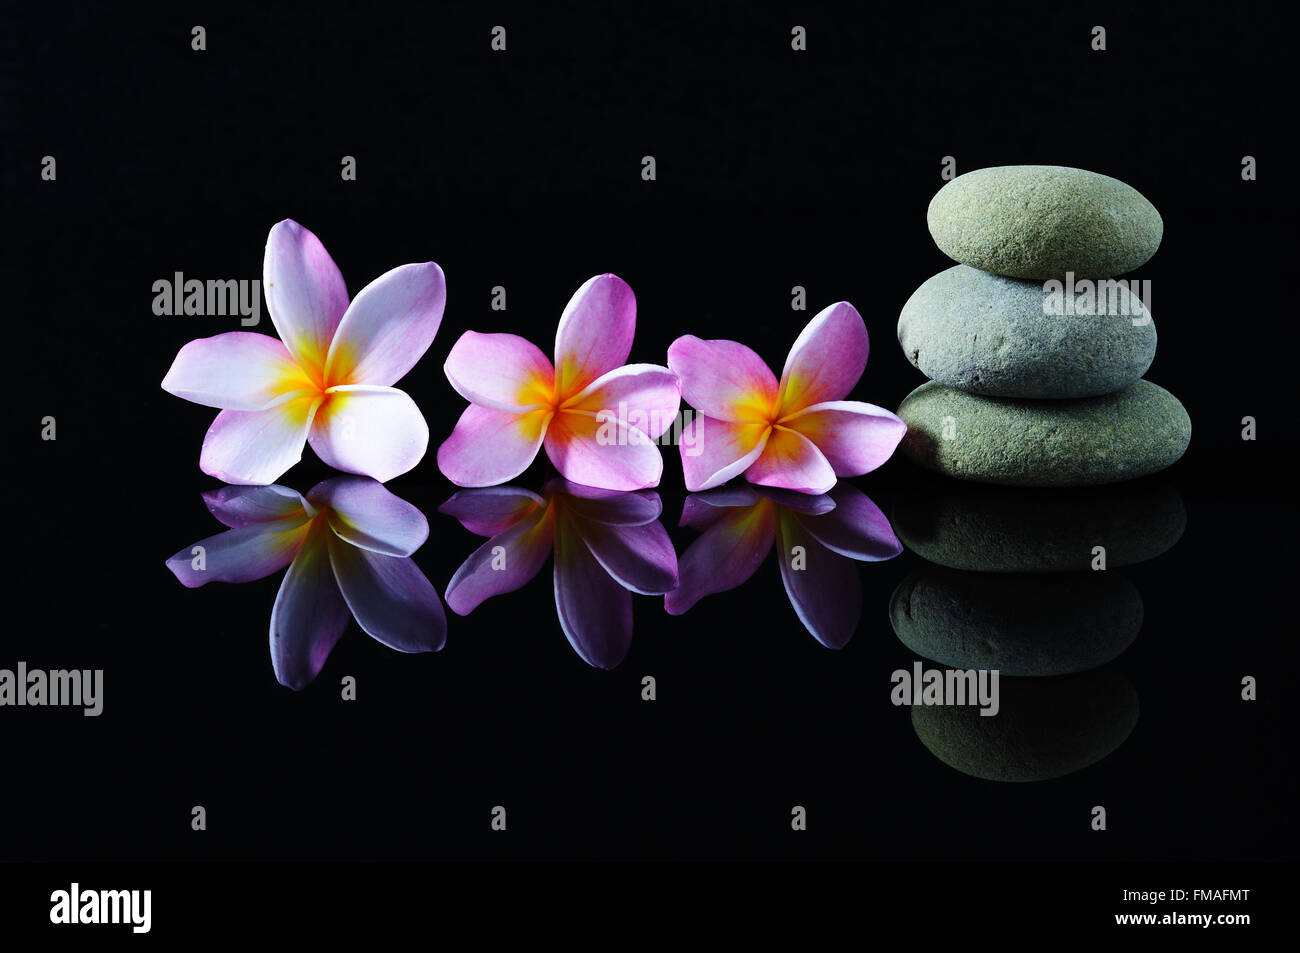 Spa, belleza y wellness - concepto Zen de piedras apiladas y frangipani flores y reflexión con fondo oscuro. Foto de stock